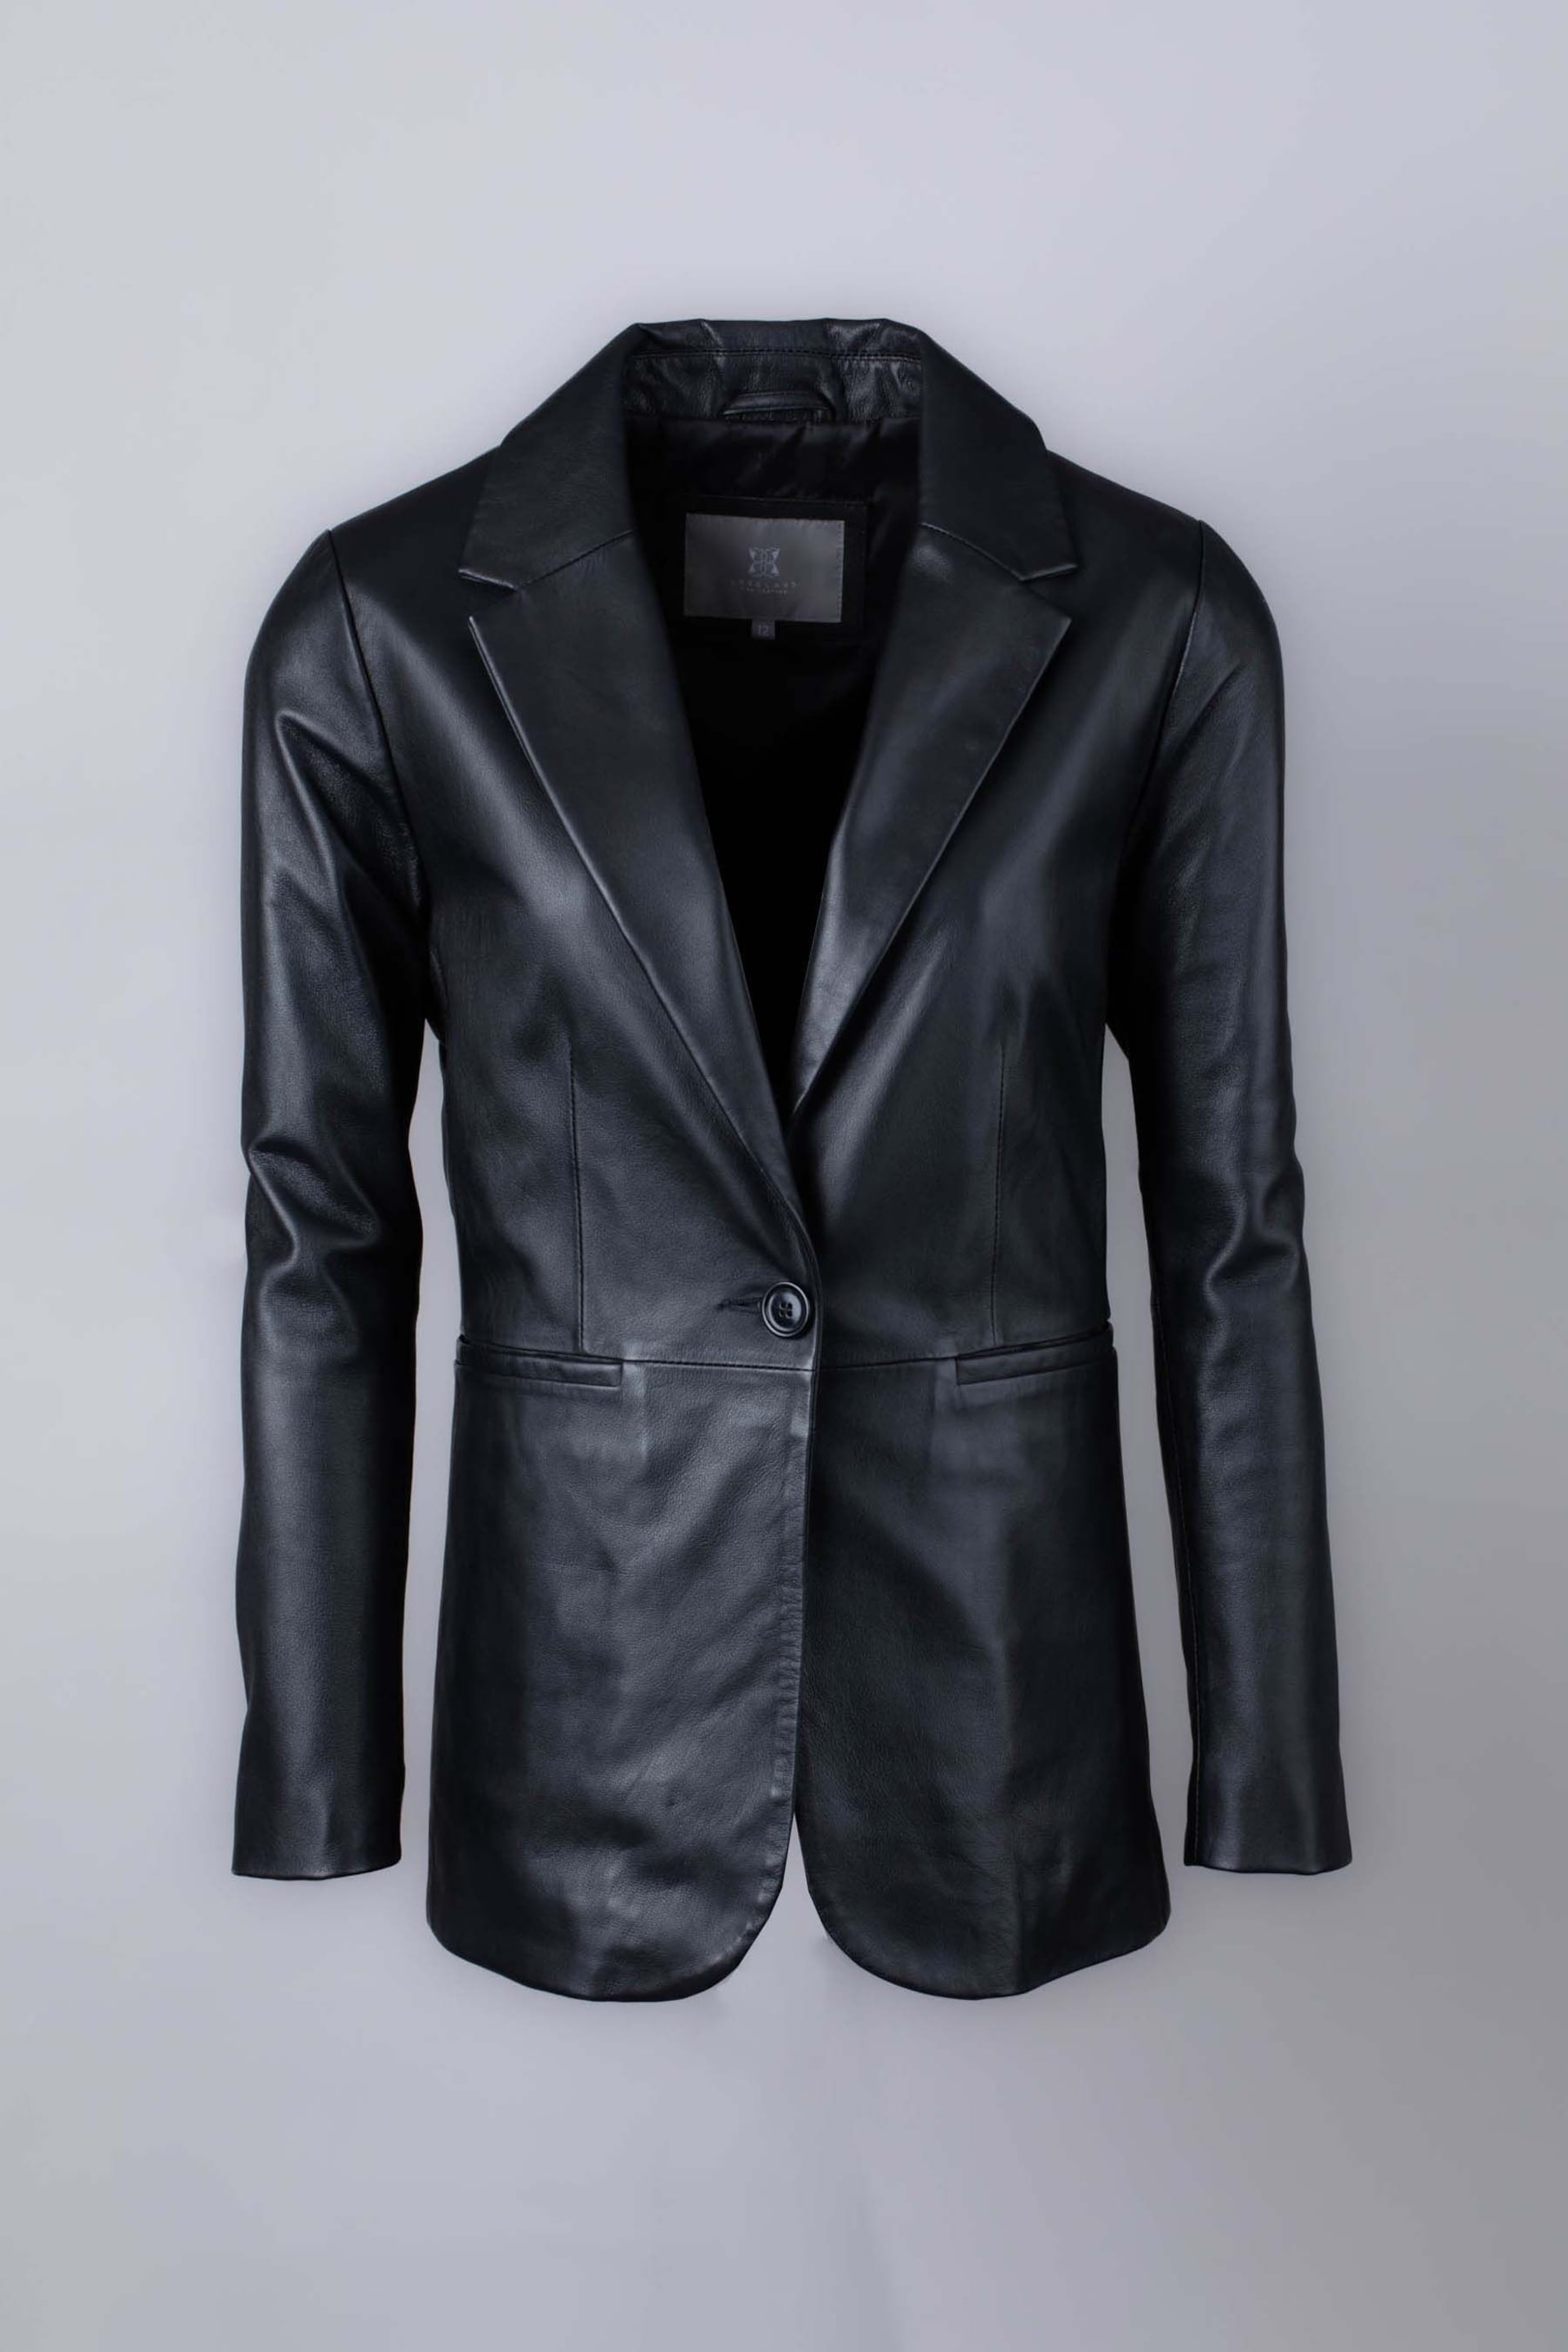 Lakeland Leather Bleestone Leather Black Blazer - Image 8 of 9